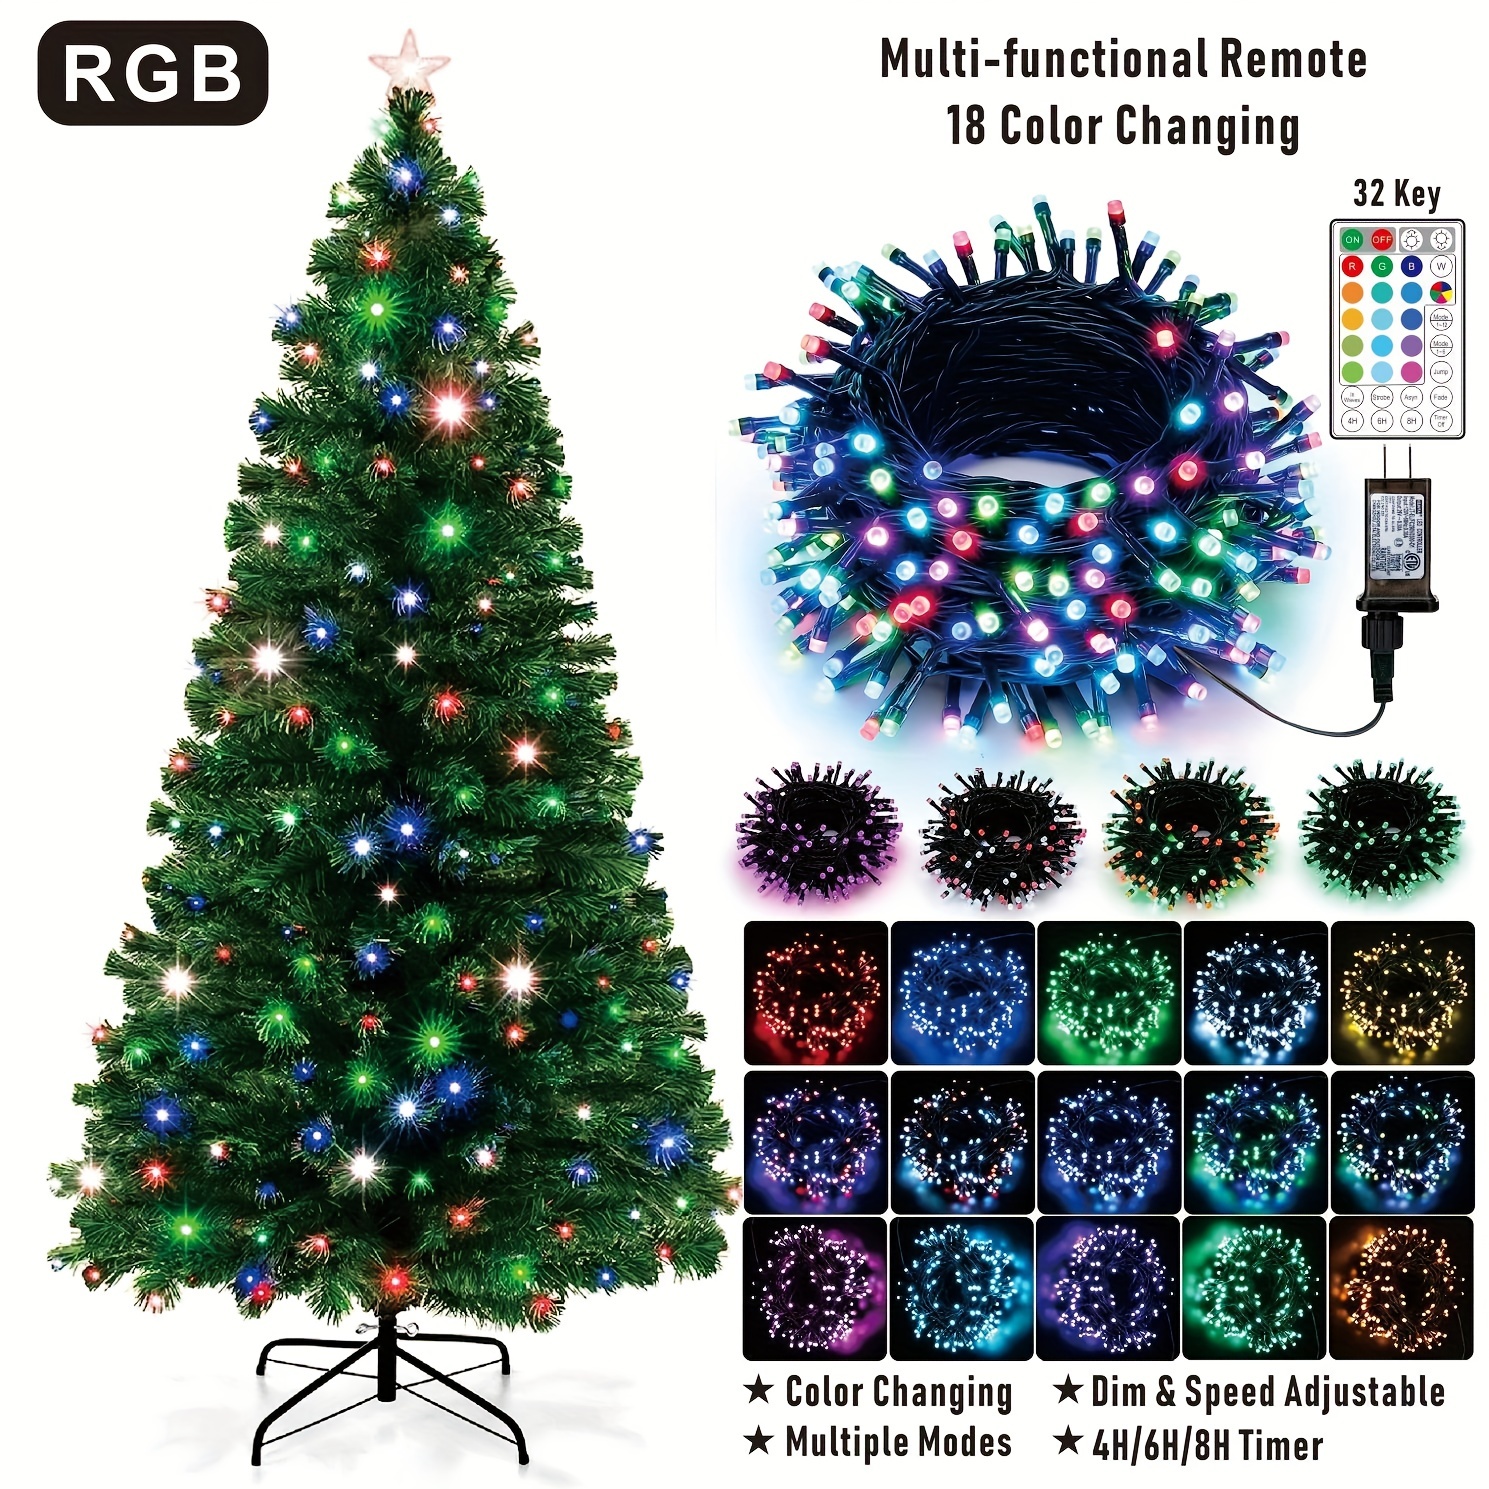 https://img.kwcdn.com/product/rgb-color-changing-christmas-lights/d69d2f15w98k18-7b2c0345/Fancyalgo/VirtualModelMatting/ce3b87195a98599b1f1b8d4094e59729.jpg